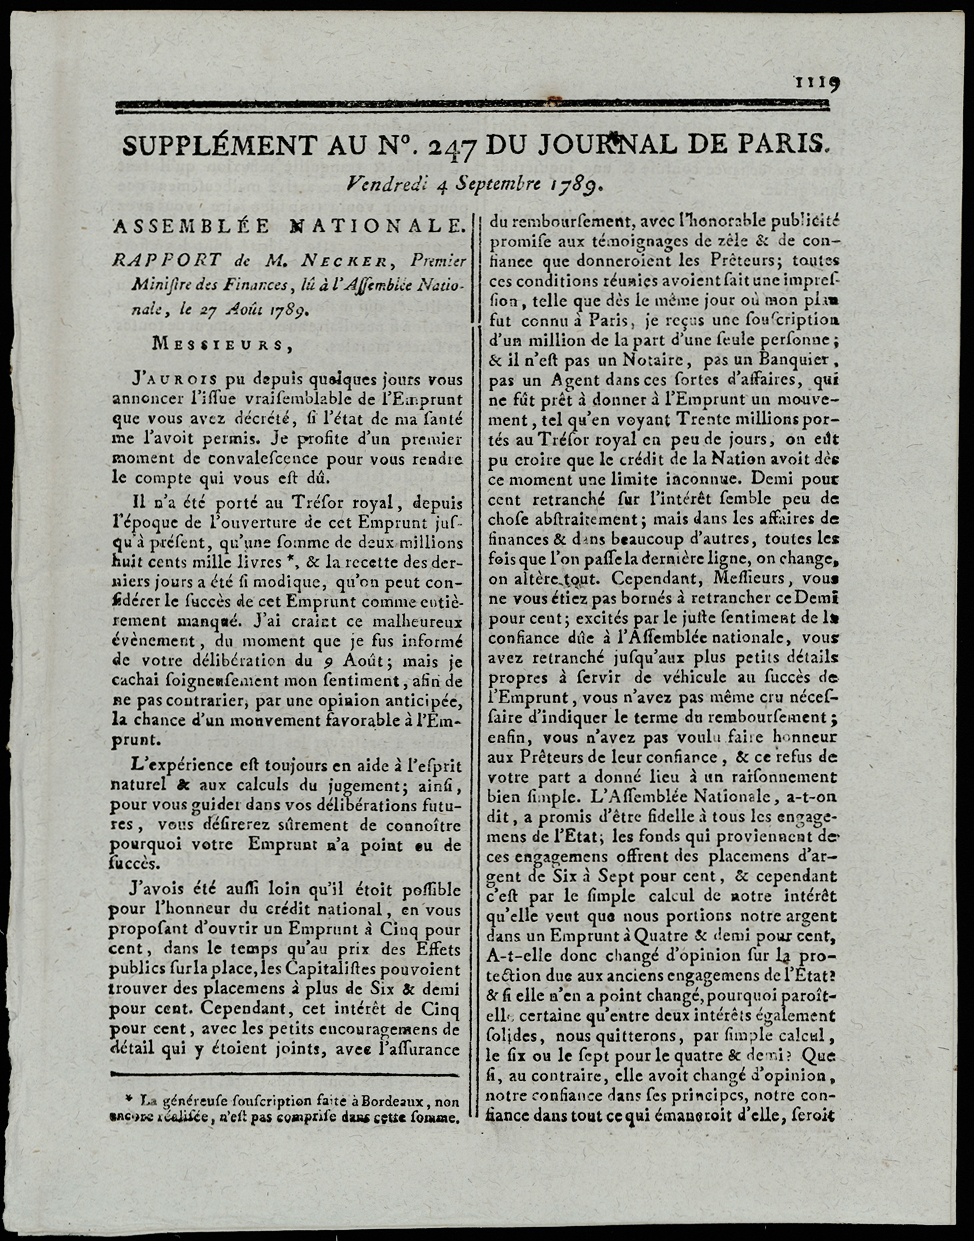 Referenz: rapport-de-m-necker-premier-ministre-des-finance-lu-a-l-assemblee-nationale-le-27-aout-1789